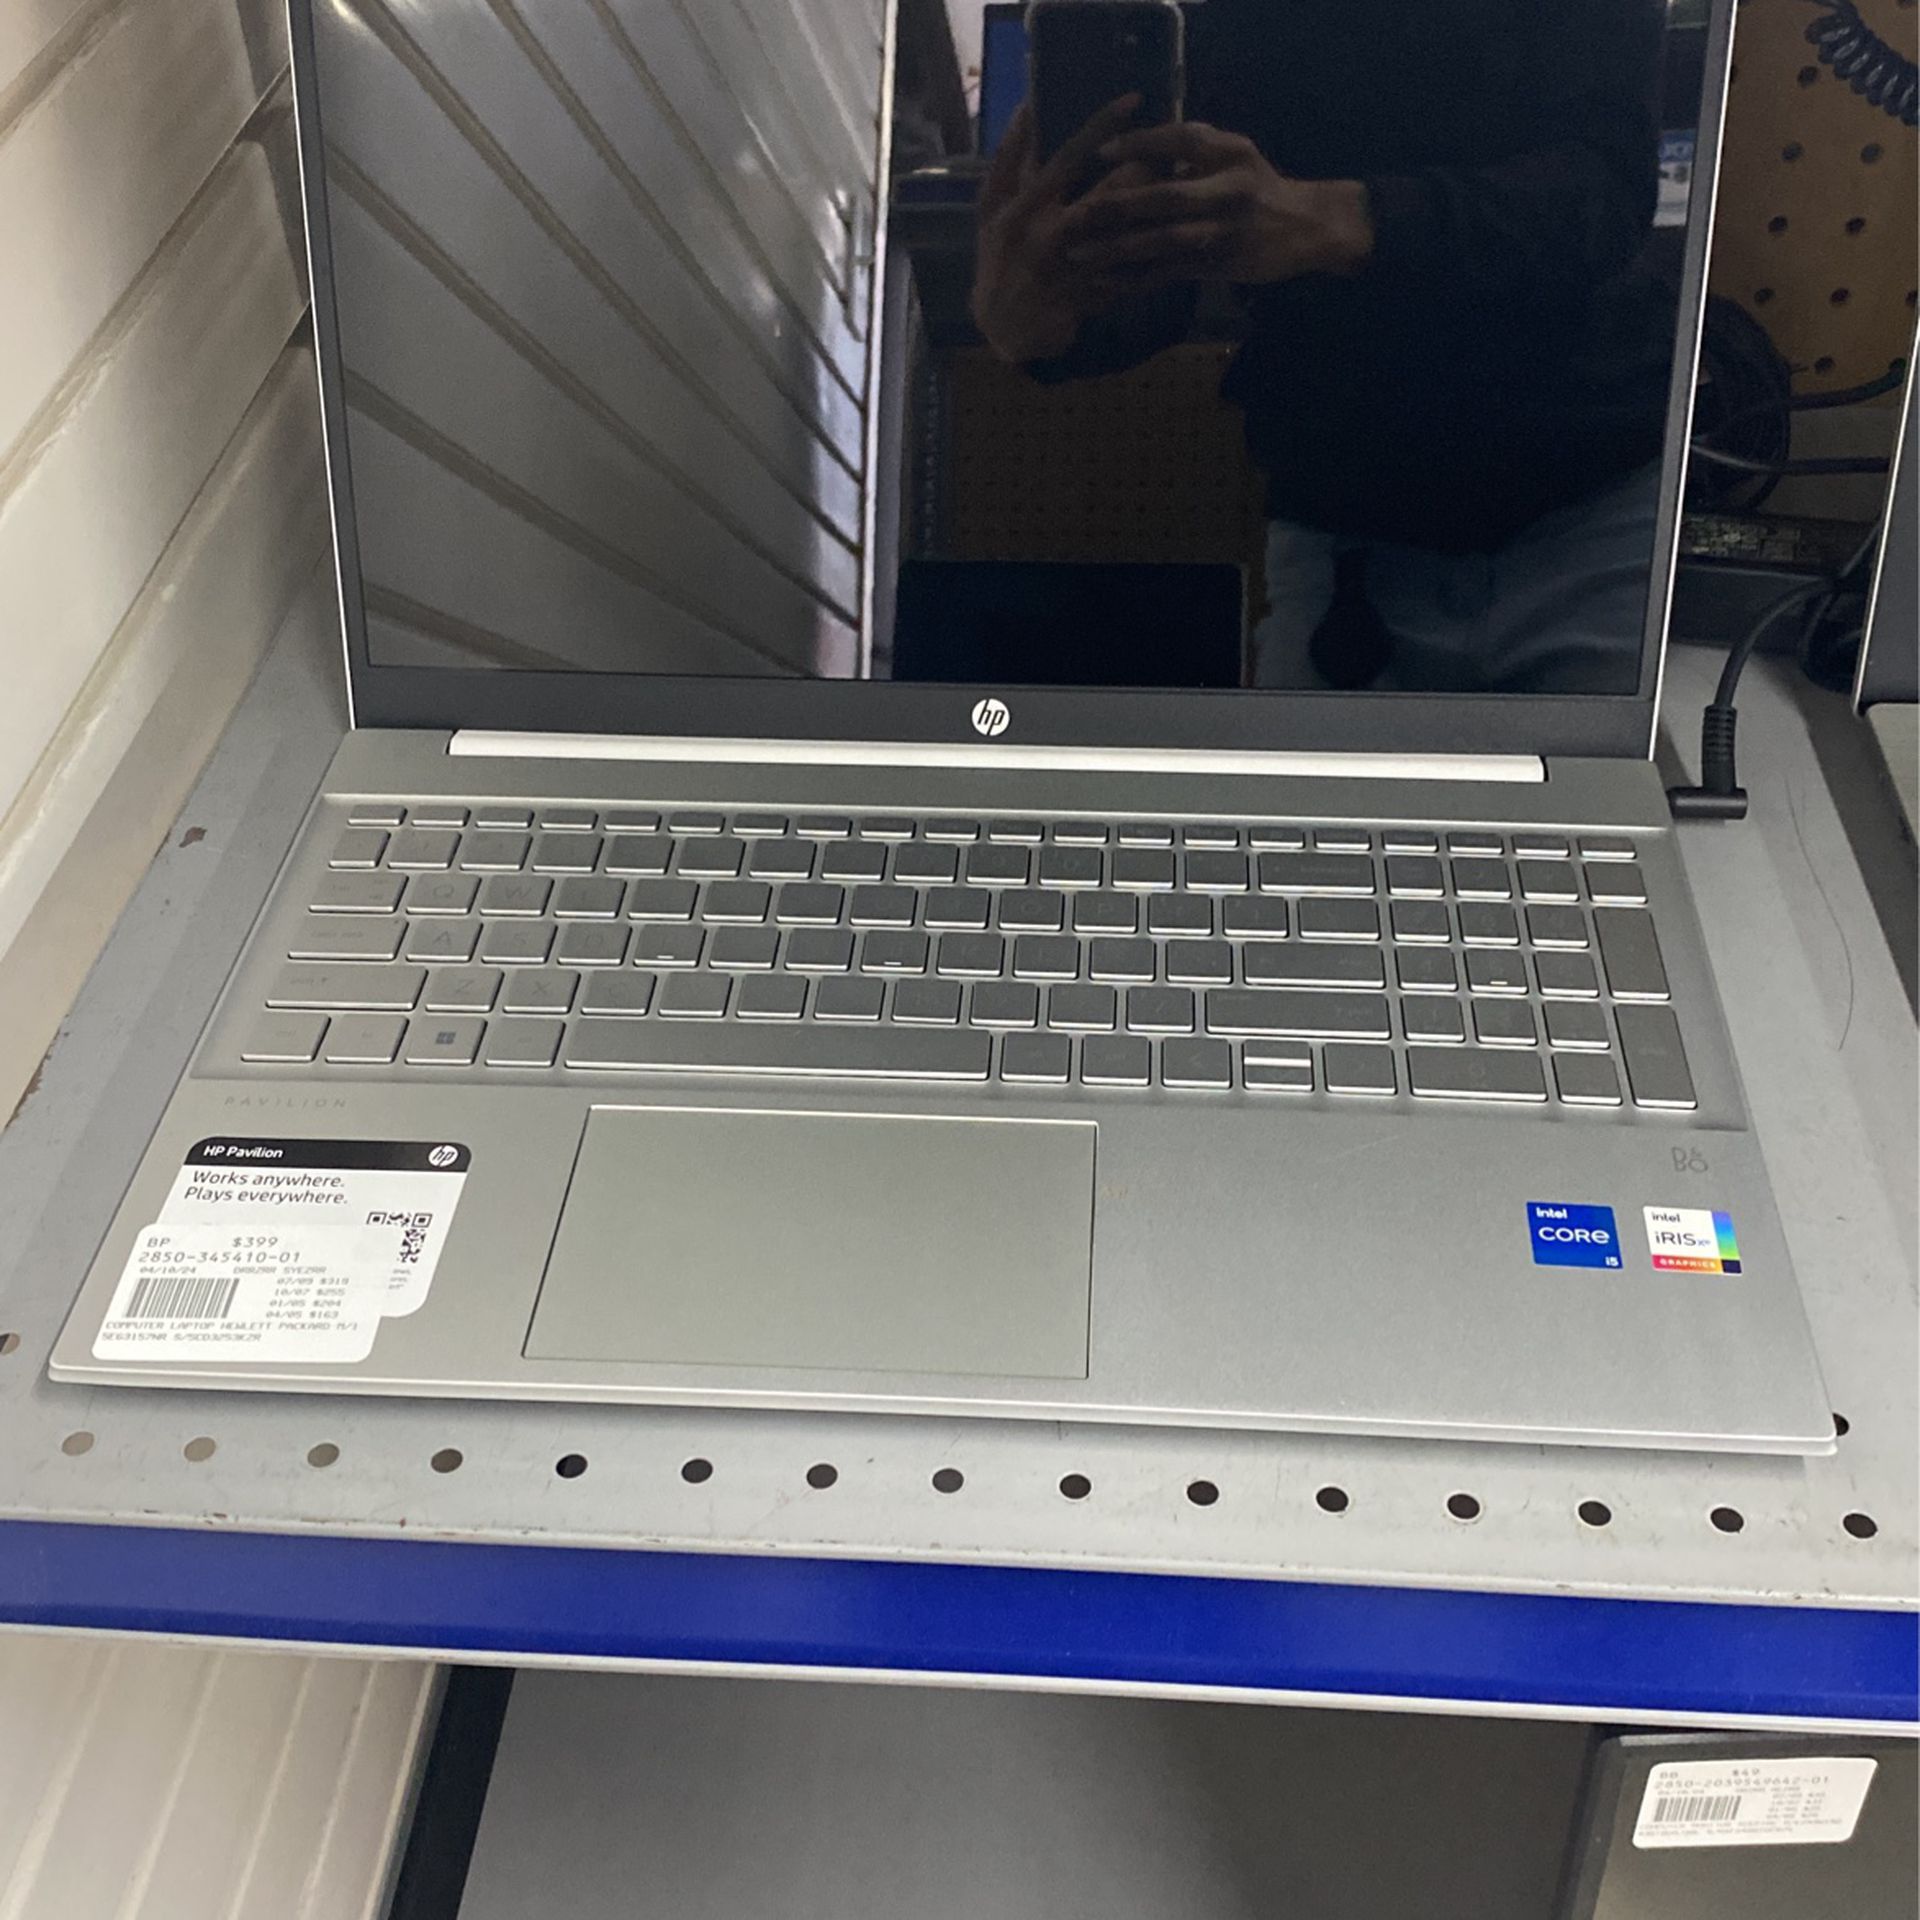 Hewlett-Packard,Silver,Laptop 